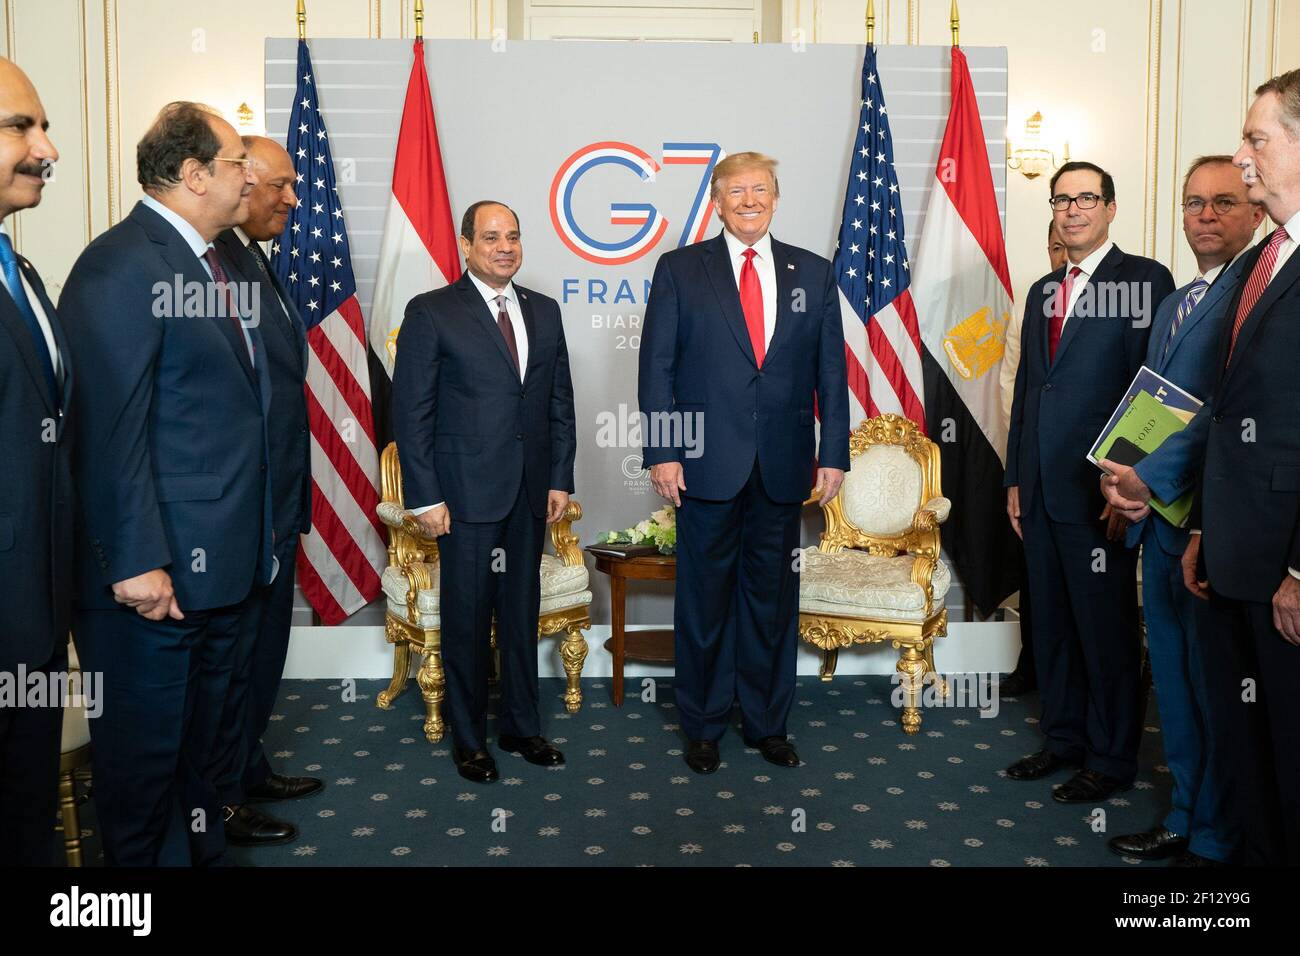 El presidente Donald Trump participa en una reunión bilateral con el presidente de la República Árabe de Egipto Abdel Fattah el-Sisi en el Hotel du Palais el lunes 26 2019 de agosto en Biarritz, Francia. Foto de stock